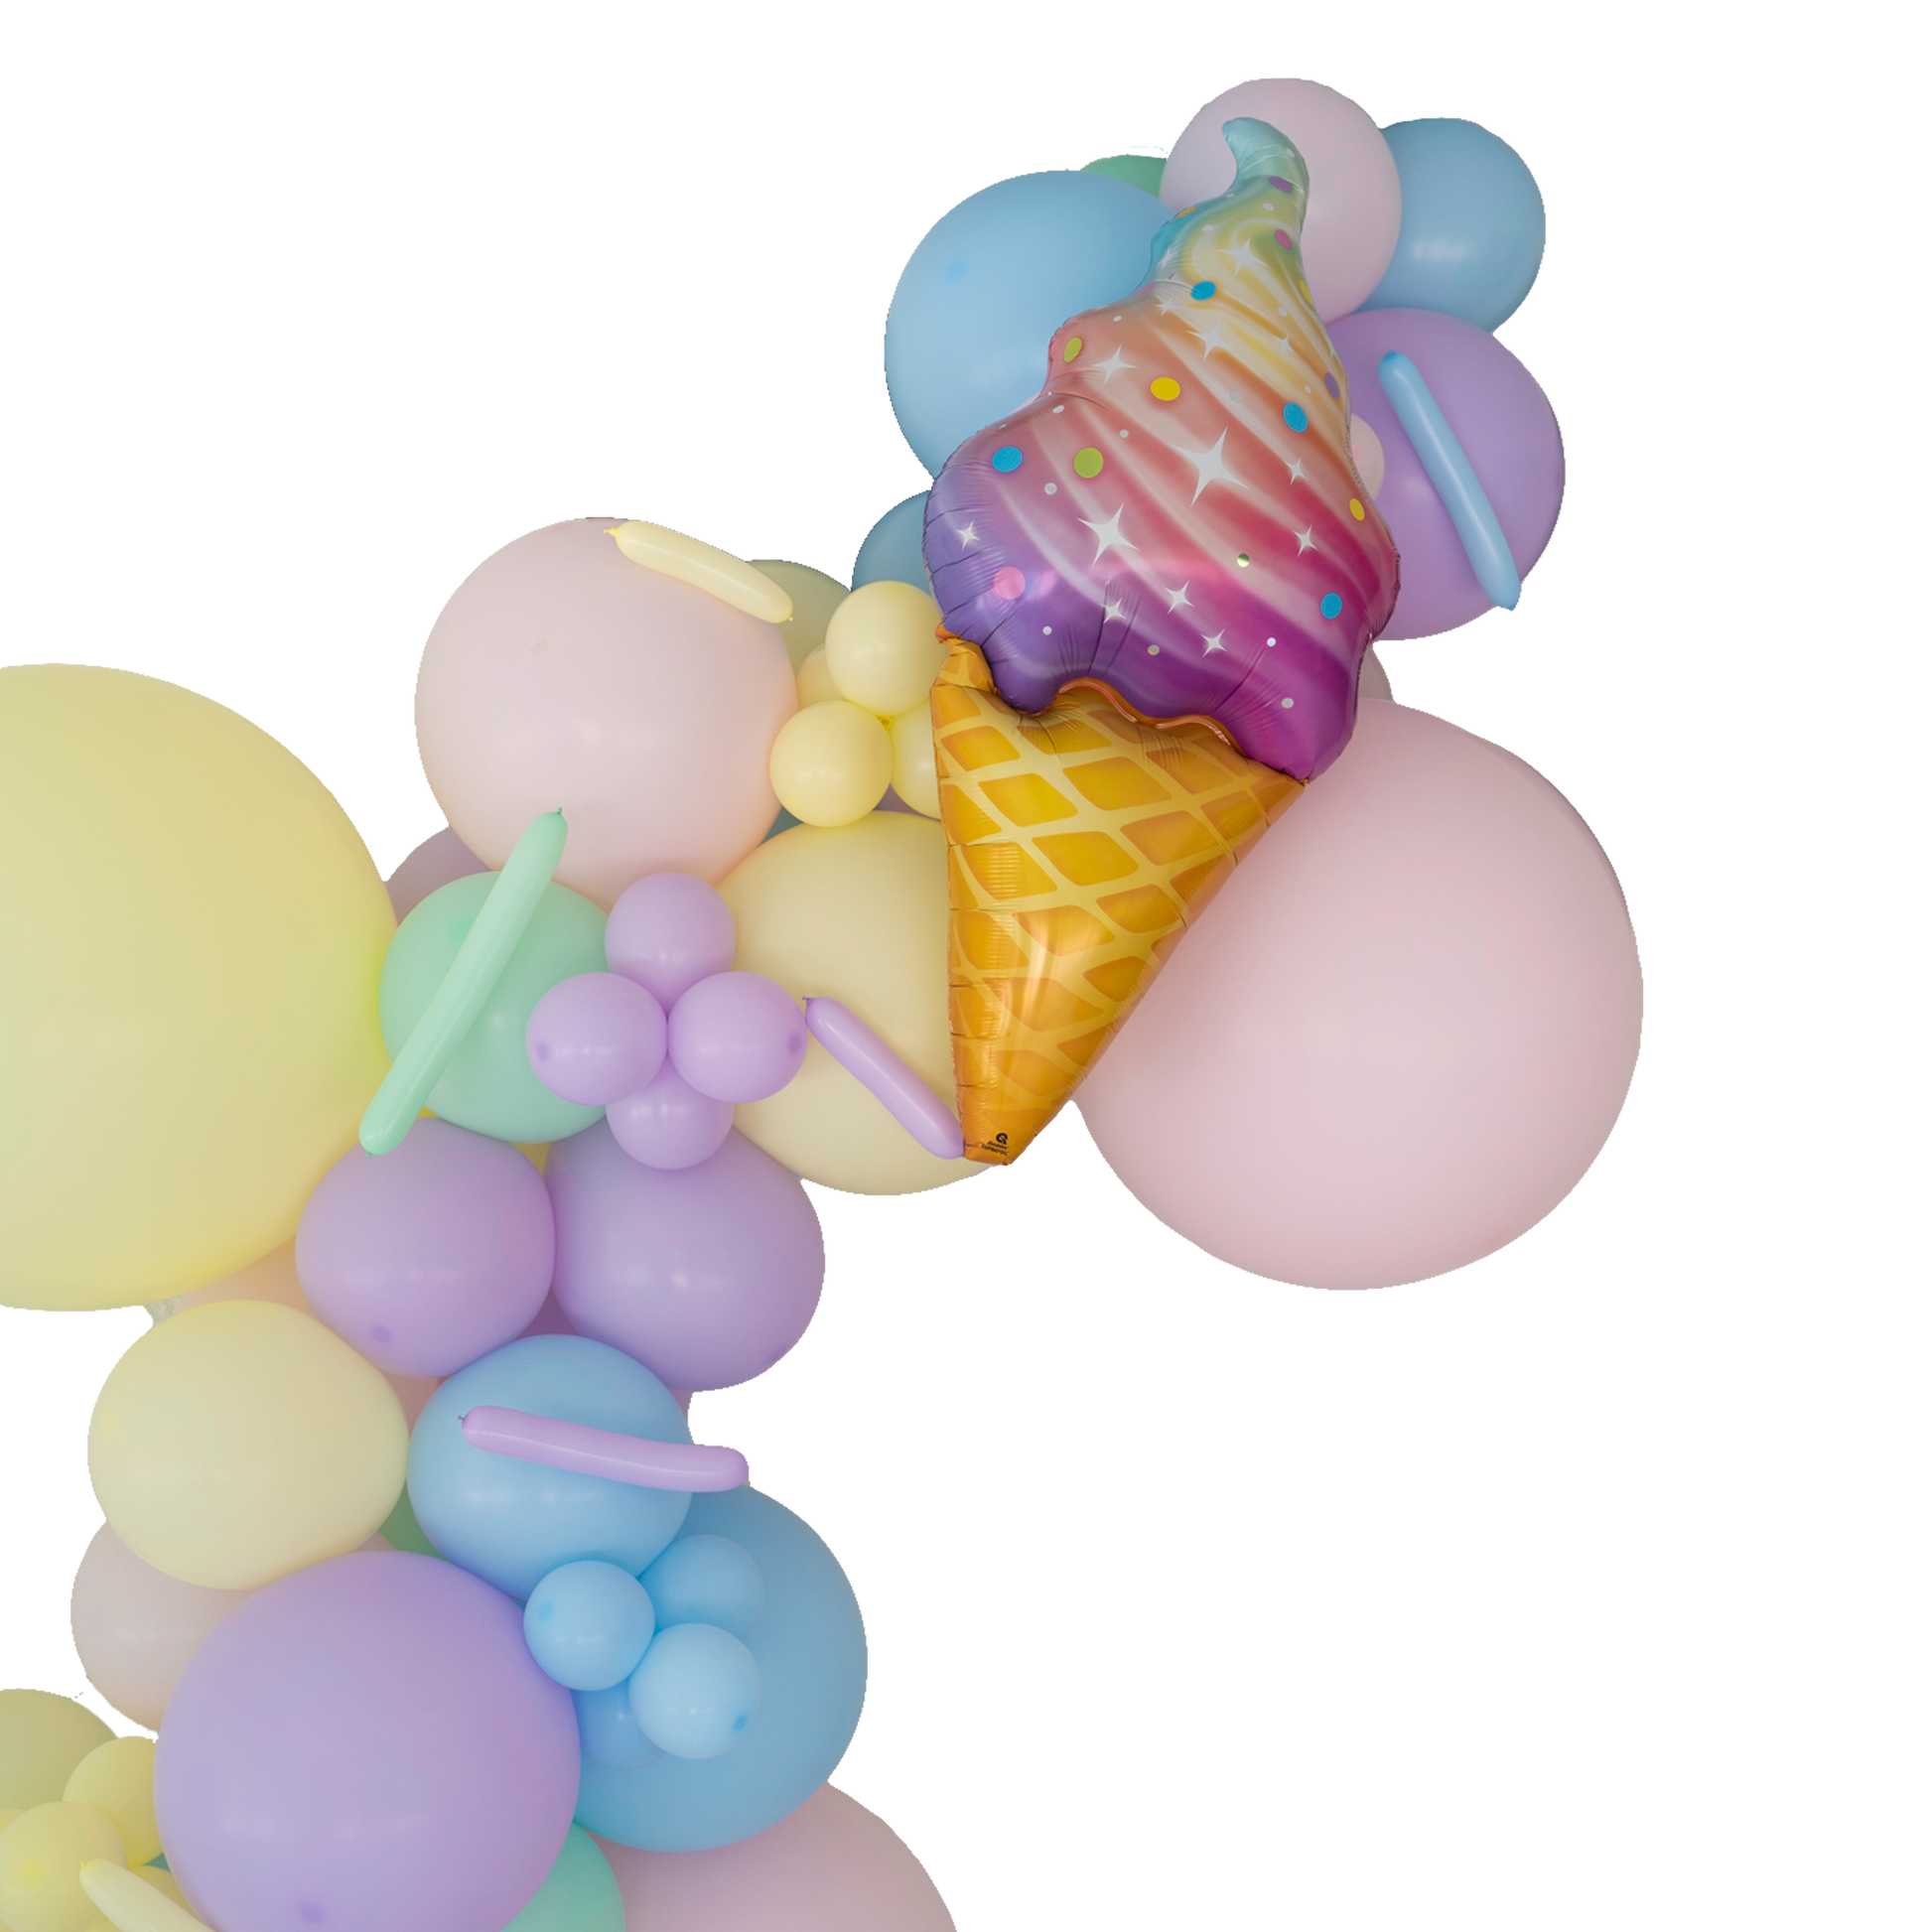 Pastel Ice Cream Balloon Garland Kit 6